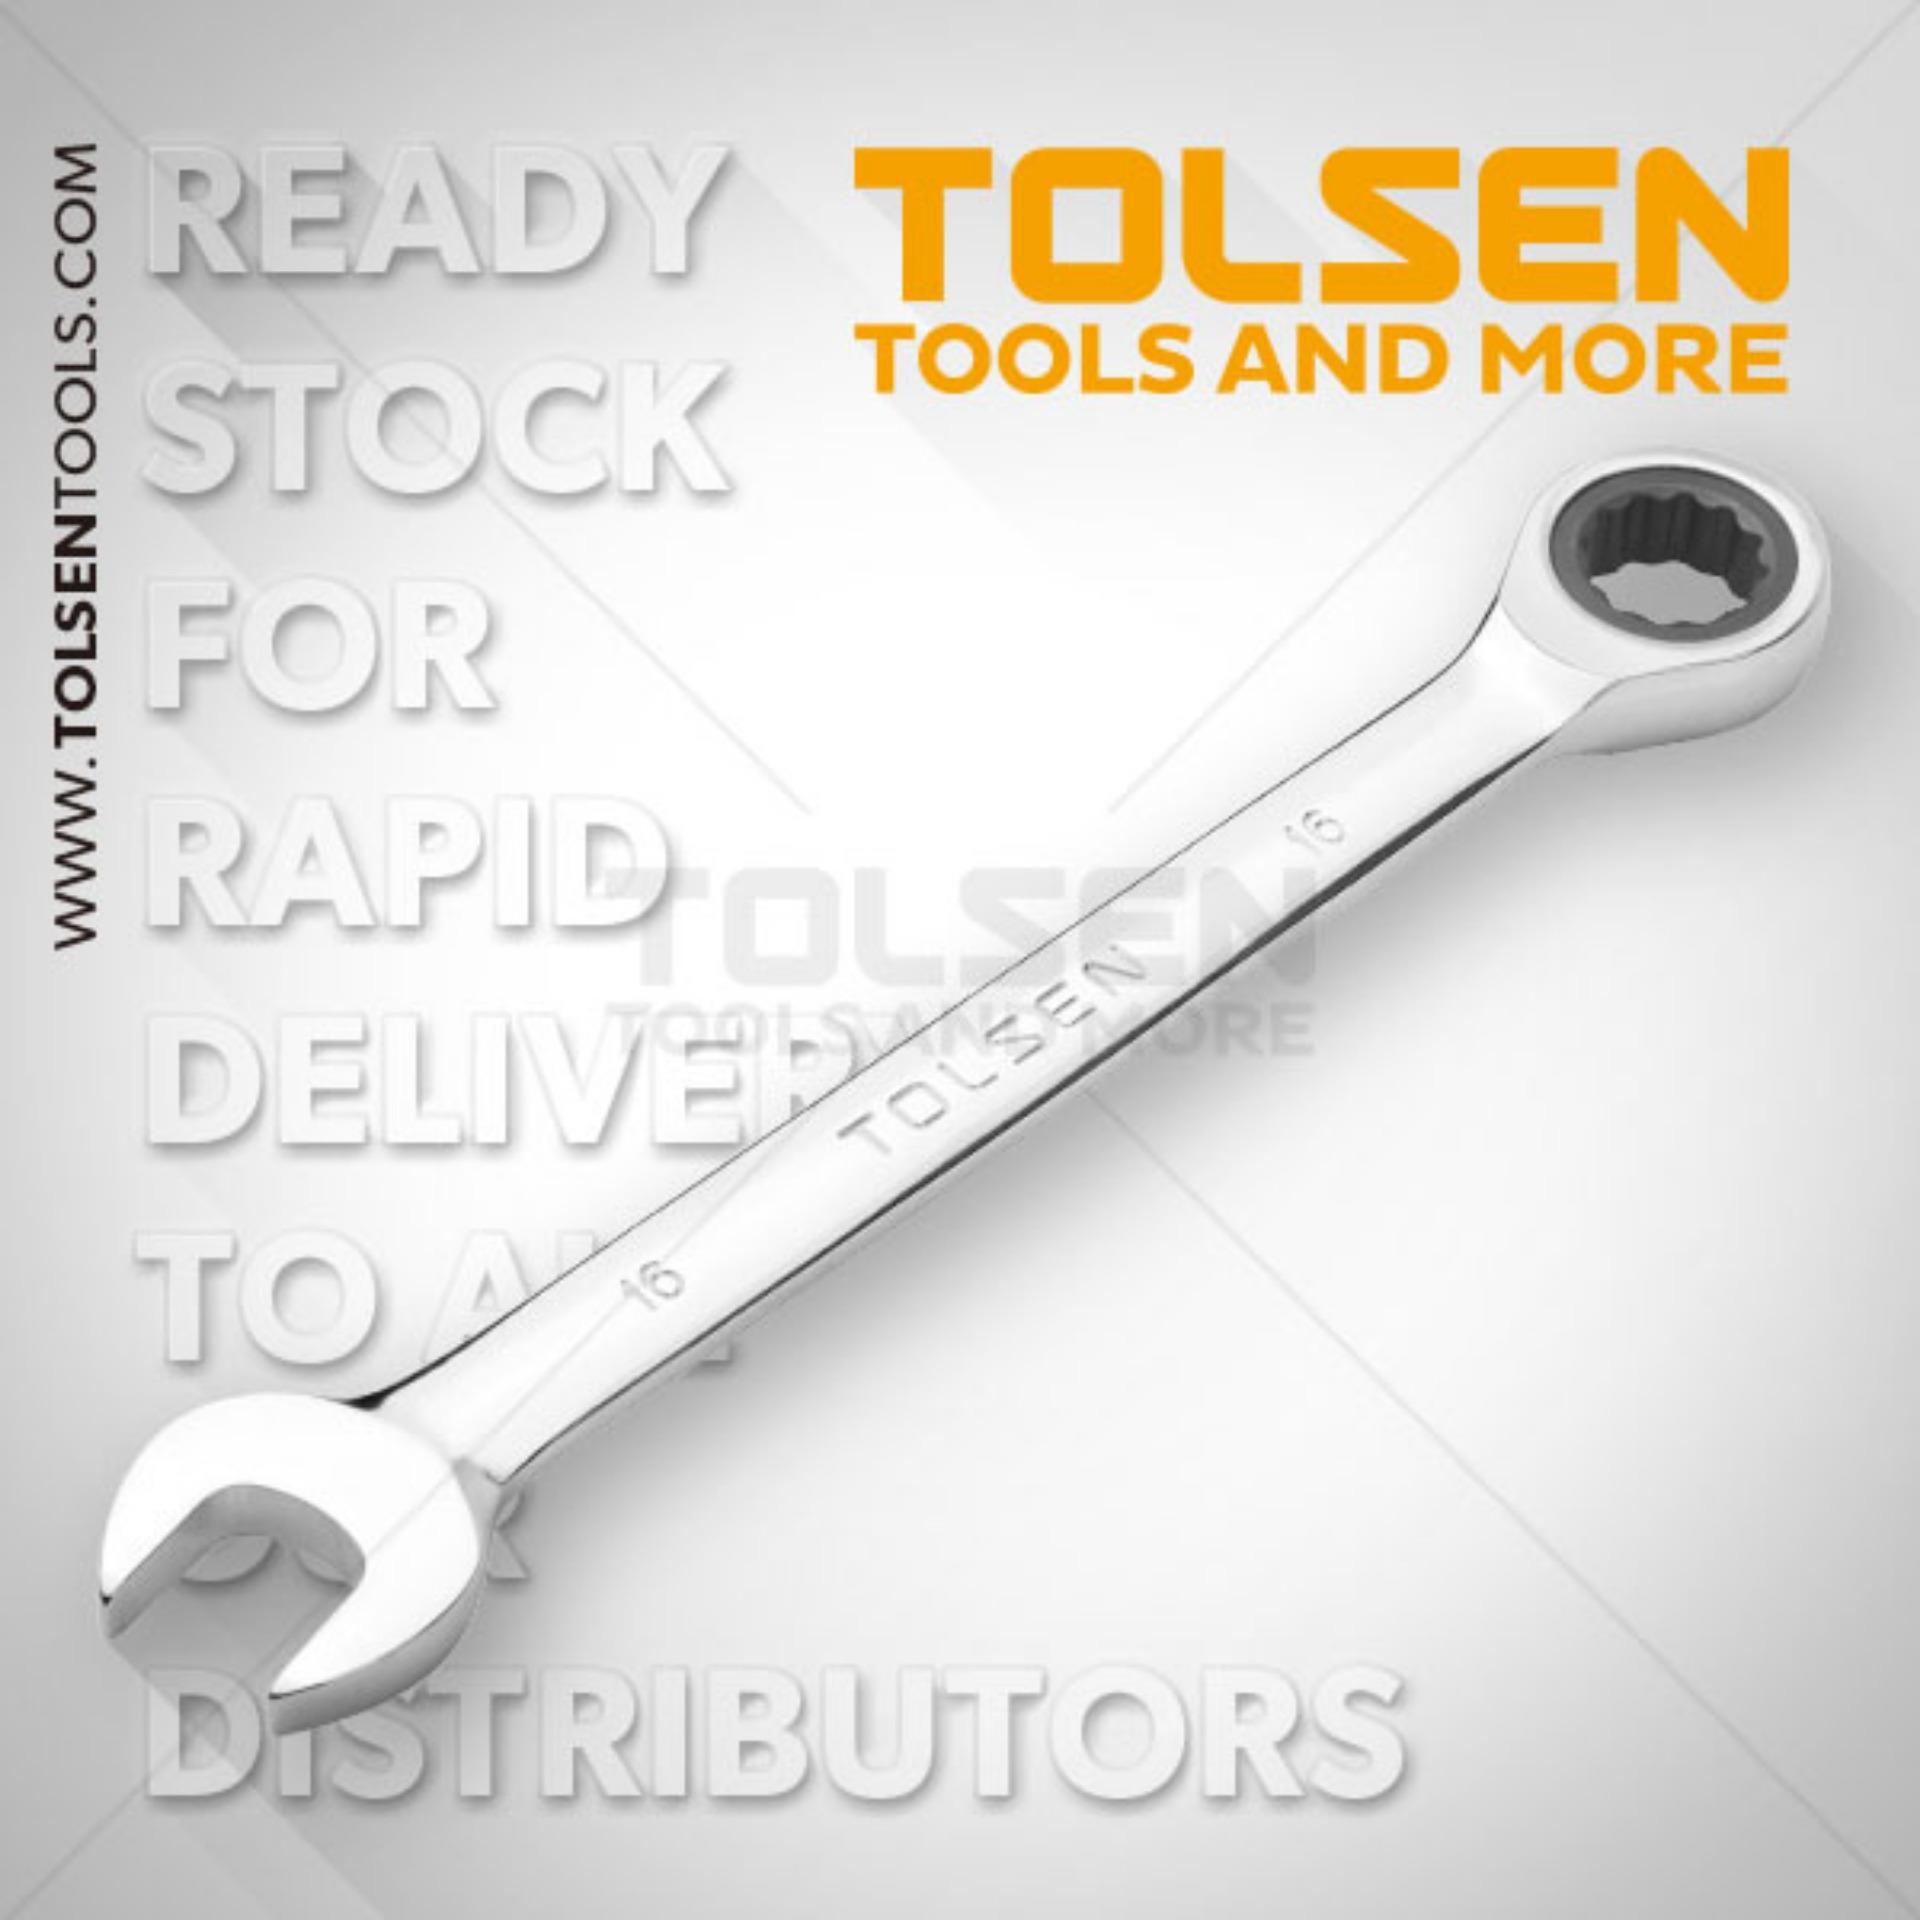 Chìa khóa miệng-vòng tự động Tolsen 15205 - 9mm